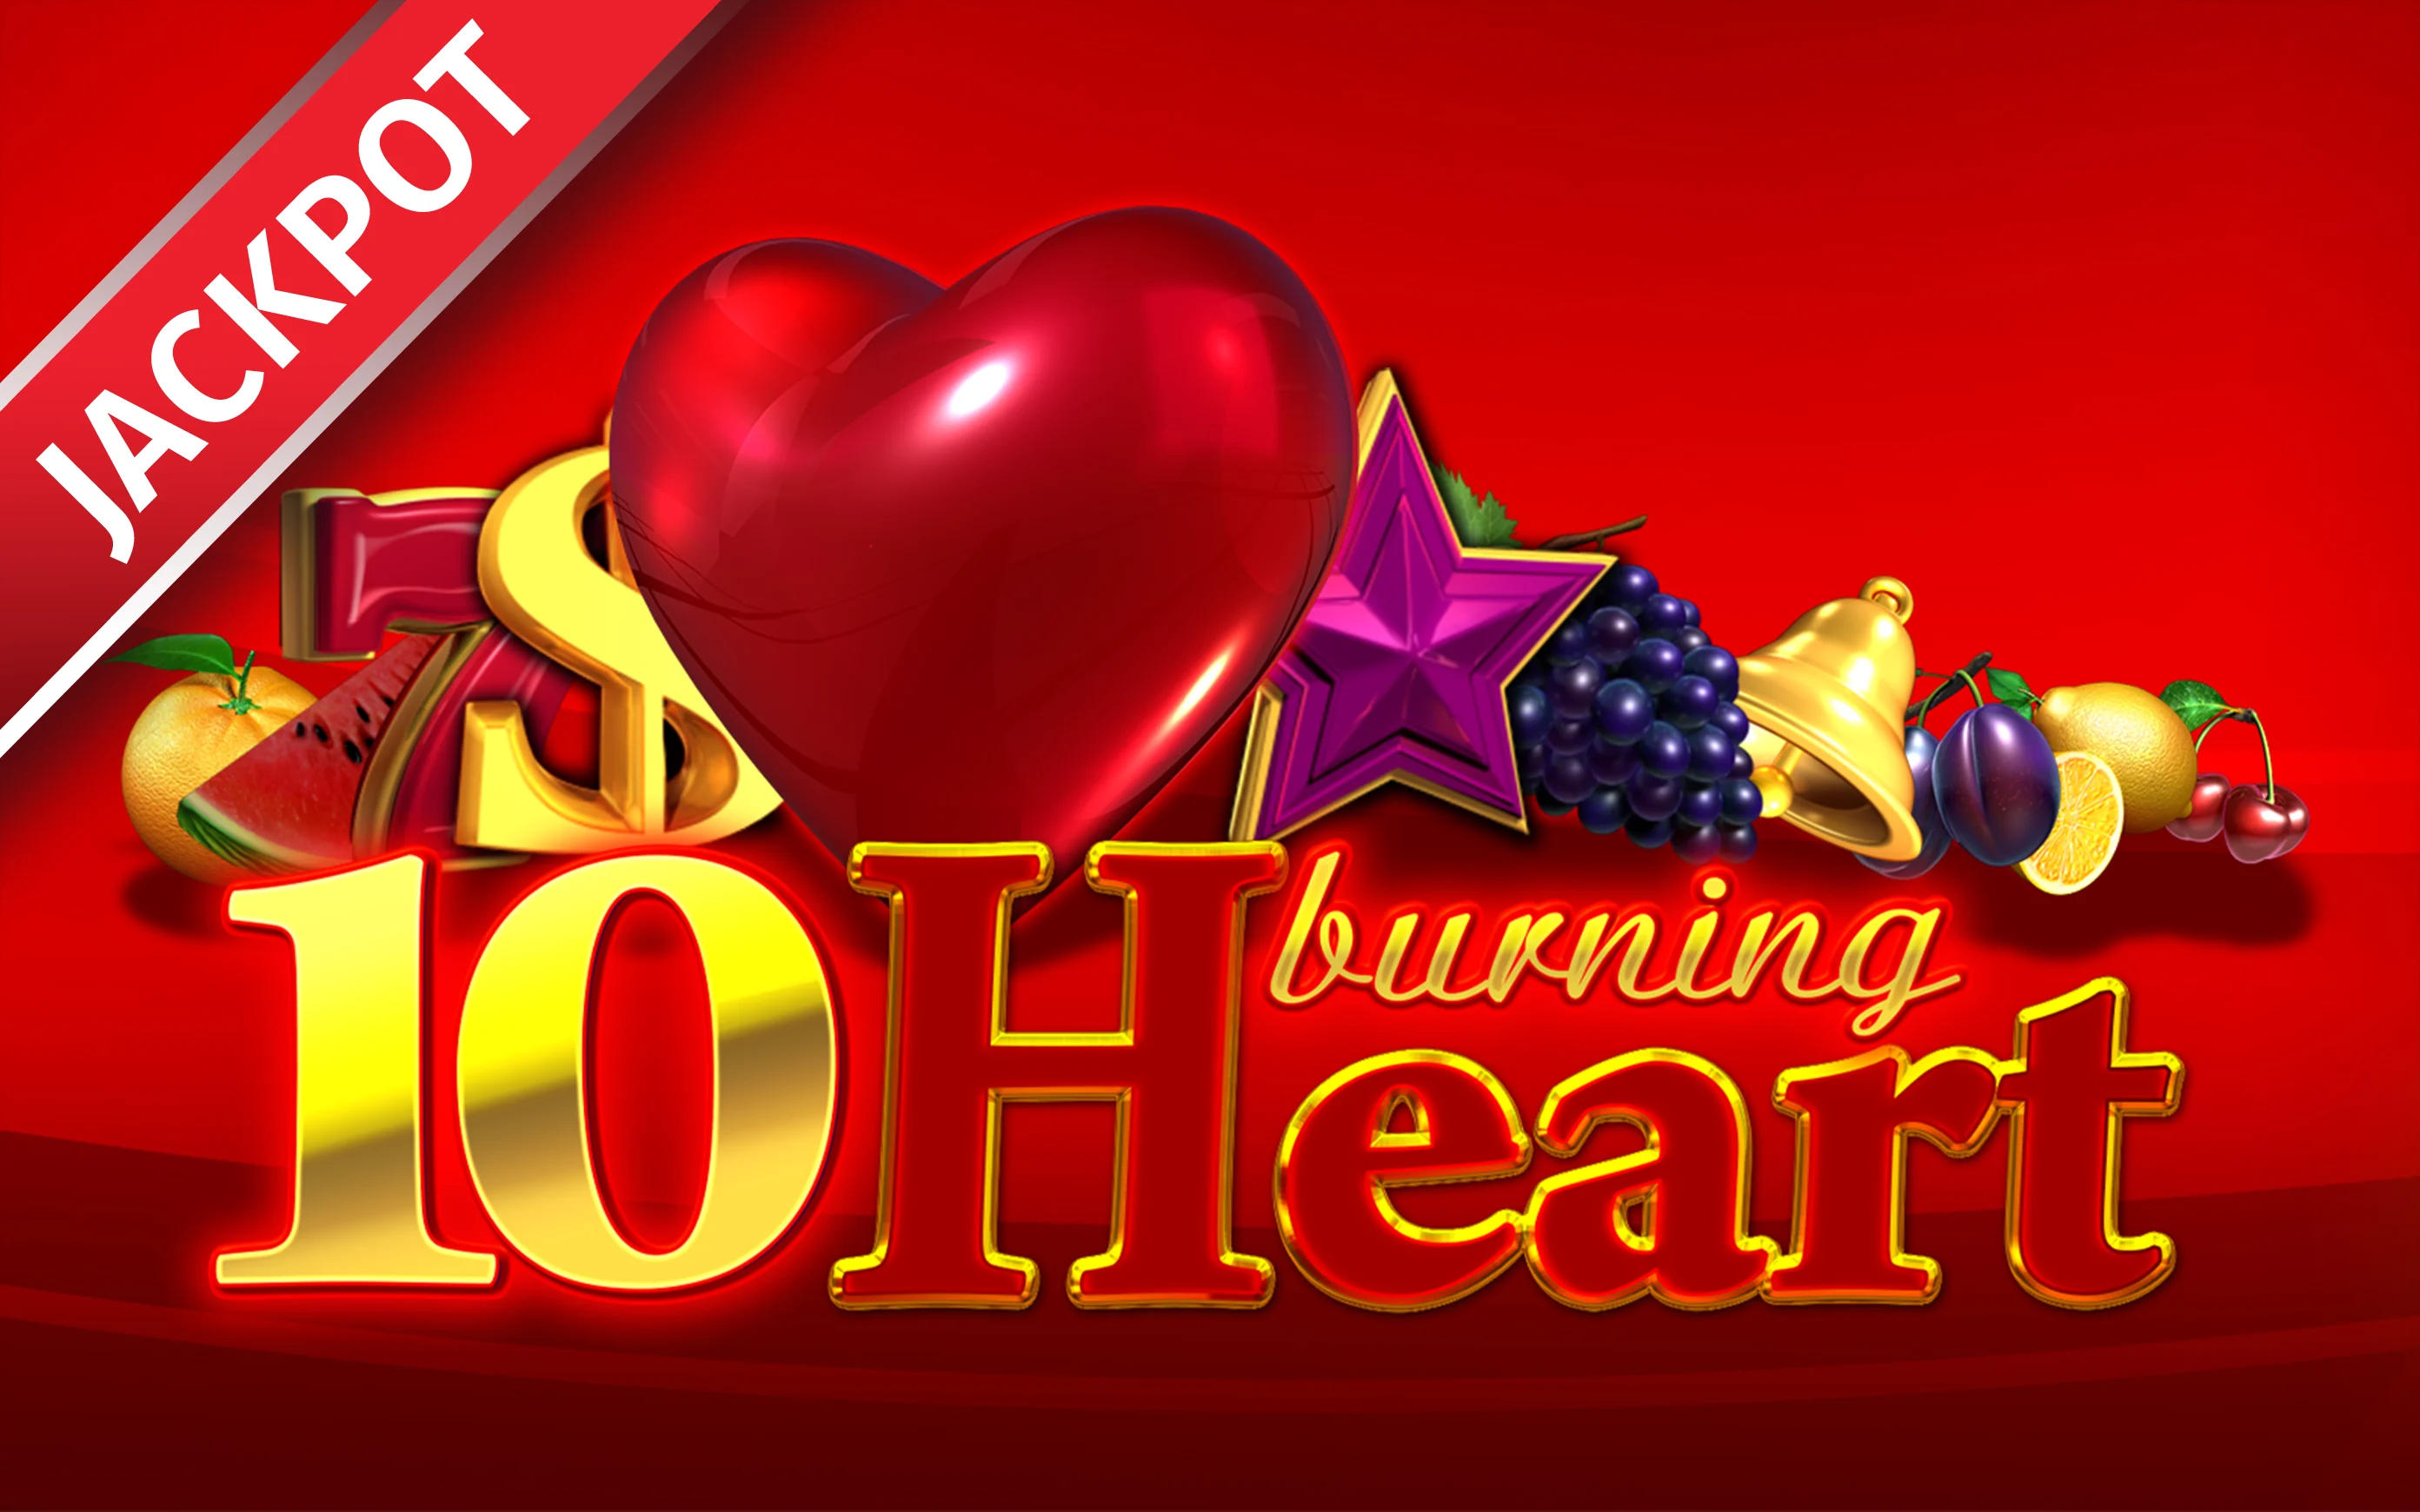 Starcasino.be online casino üzerinden 10 Burning heart oynayın